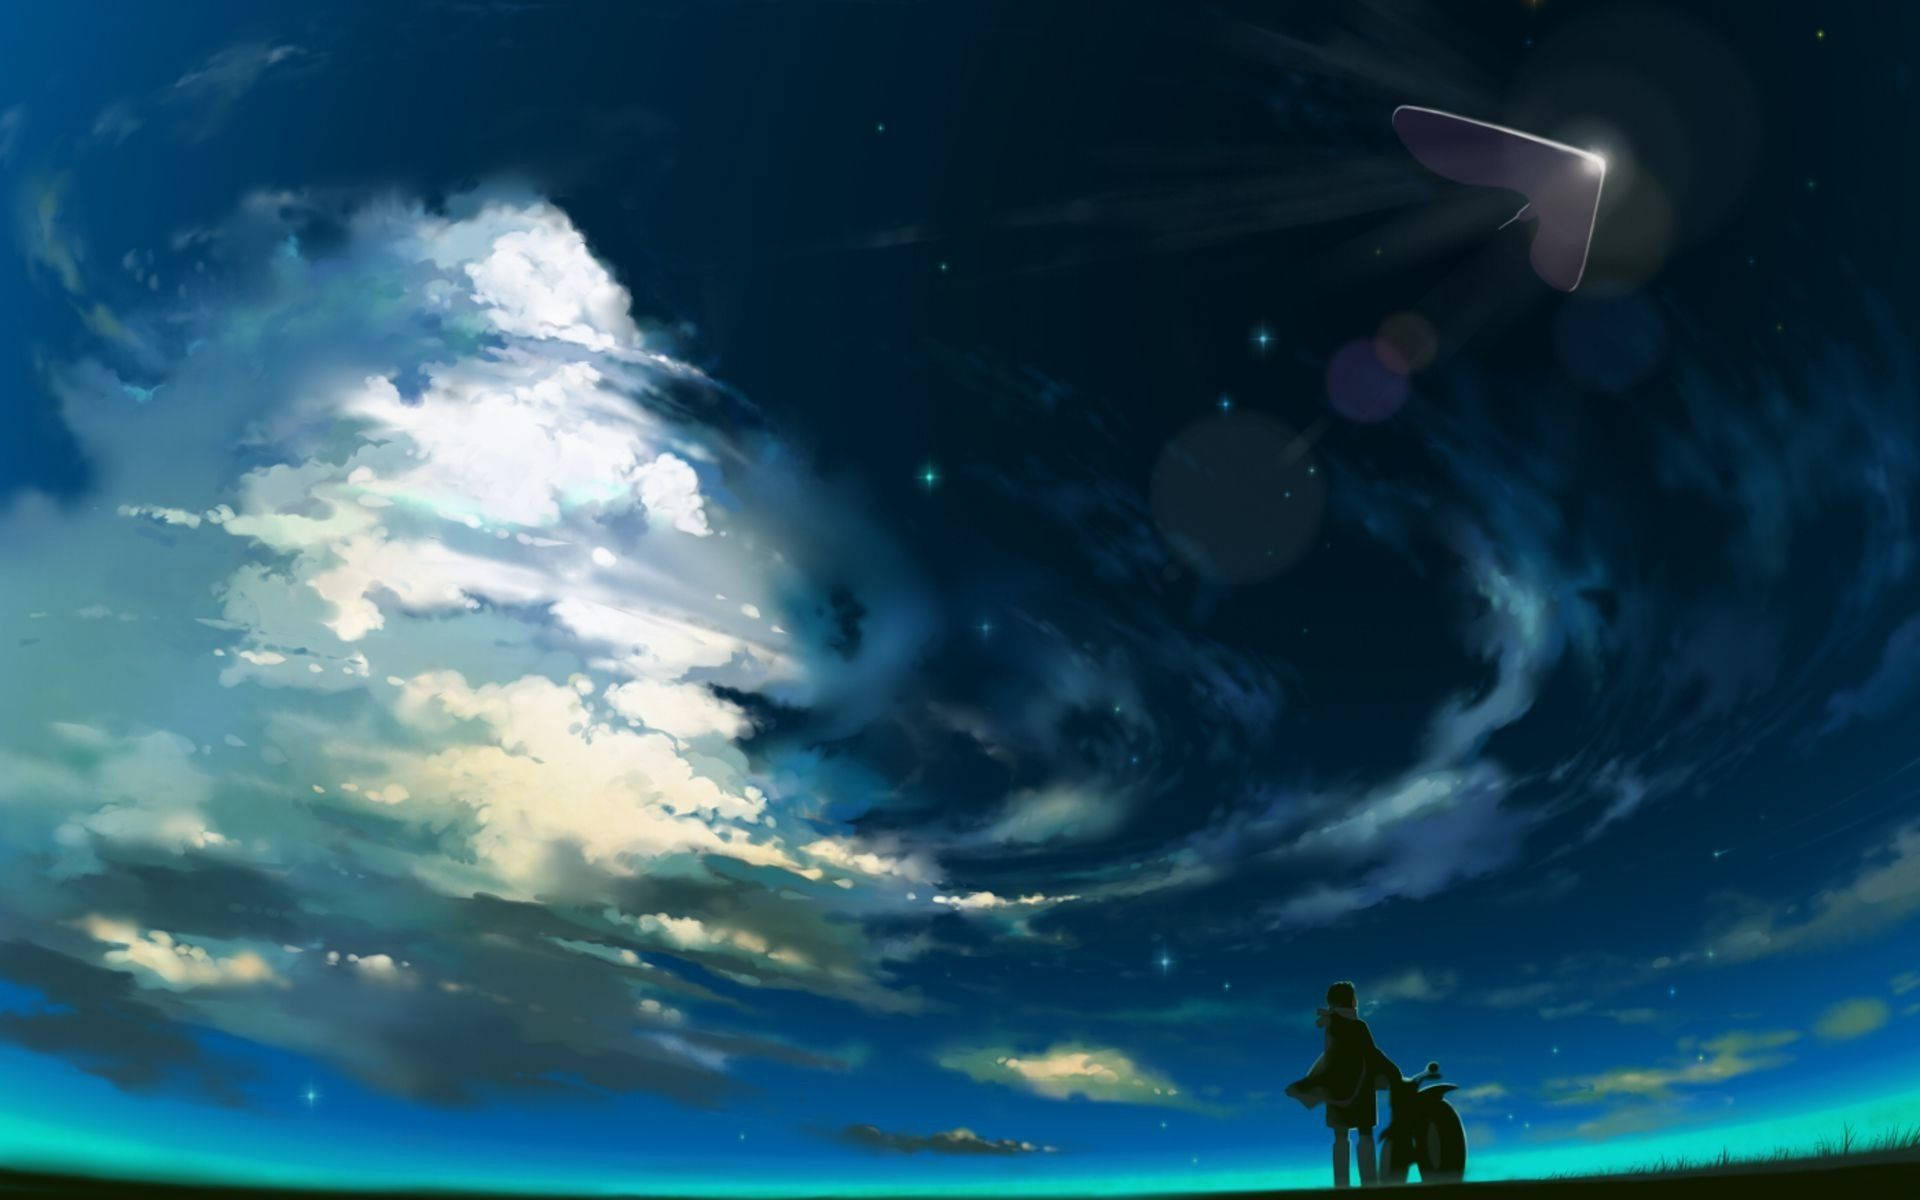 Unaescena De Anime Evocadora Y Serena En Azul Fondo de pantalla